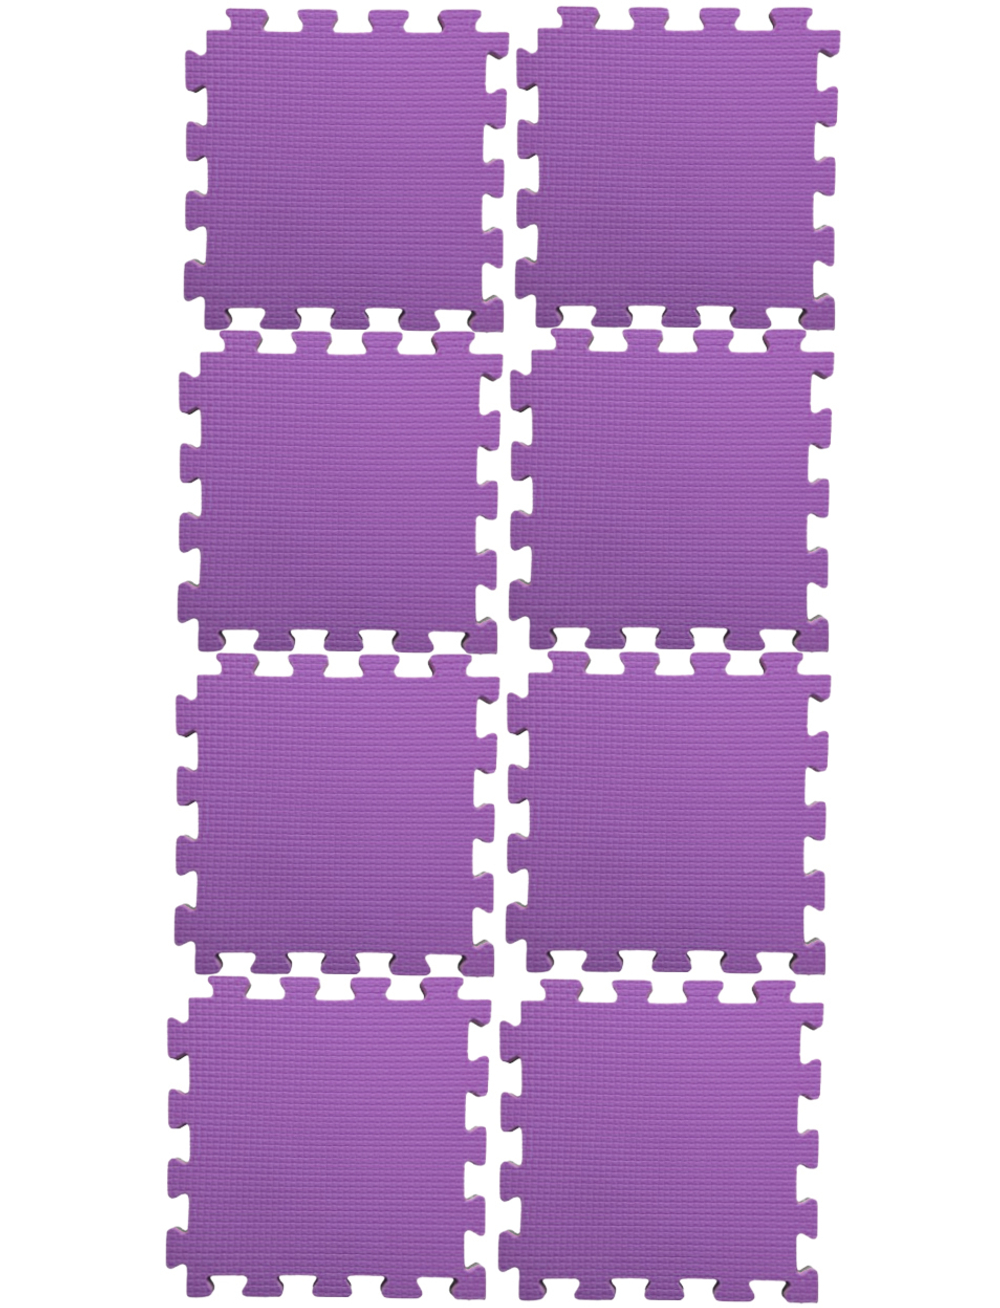 Будомат Midzumi №8 (фиолетовый)